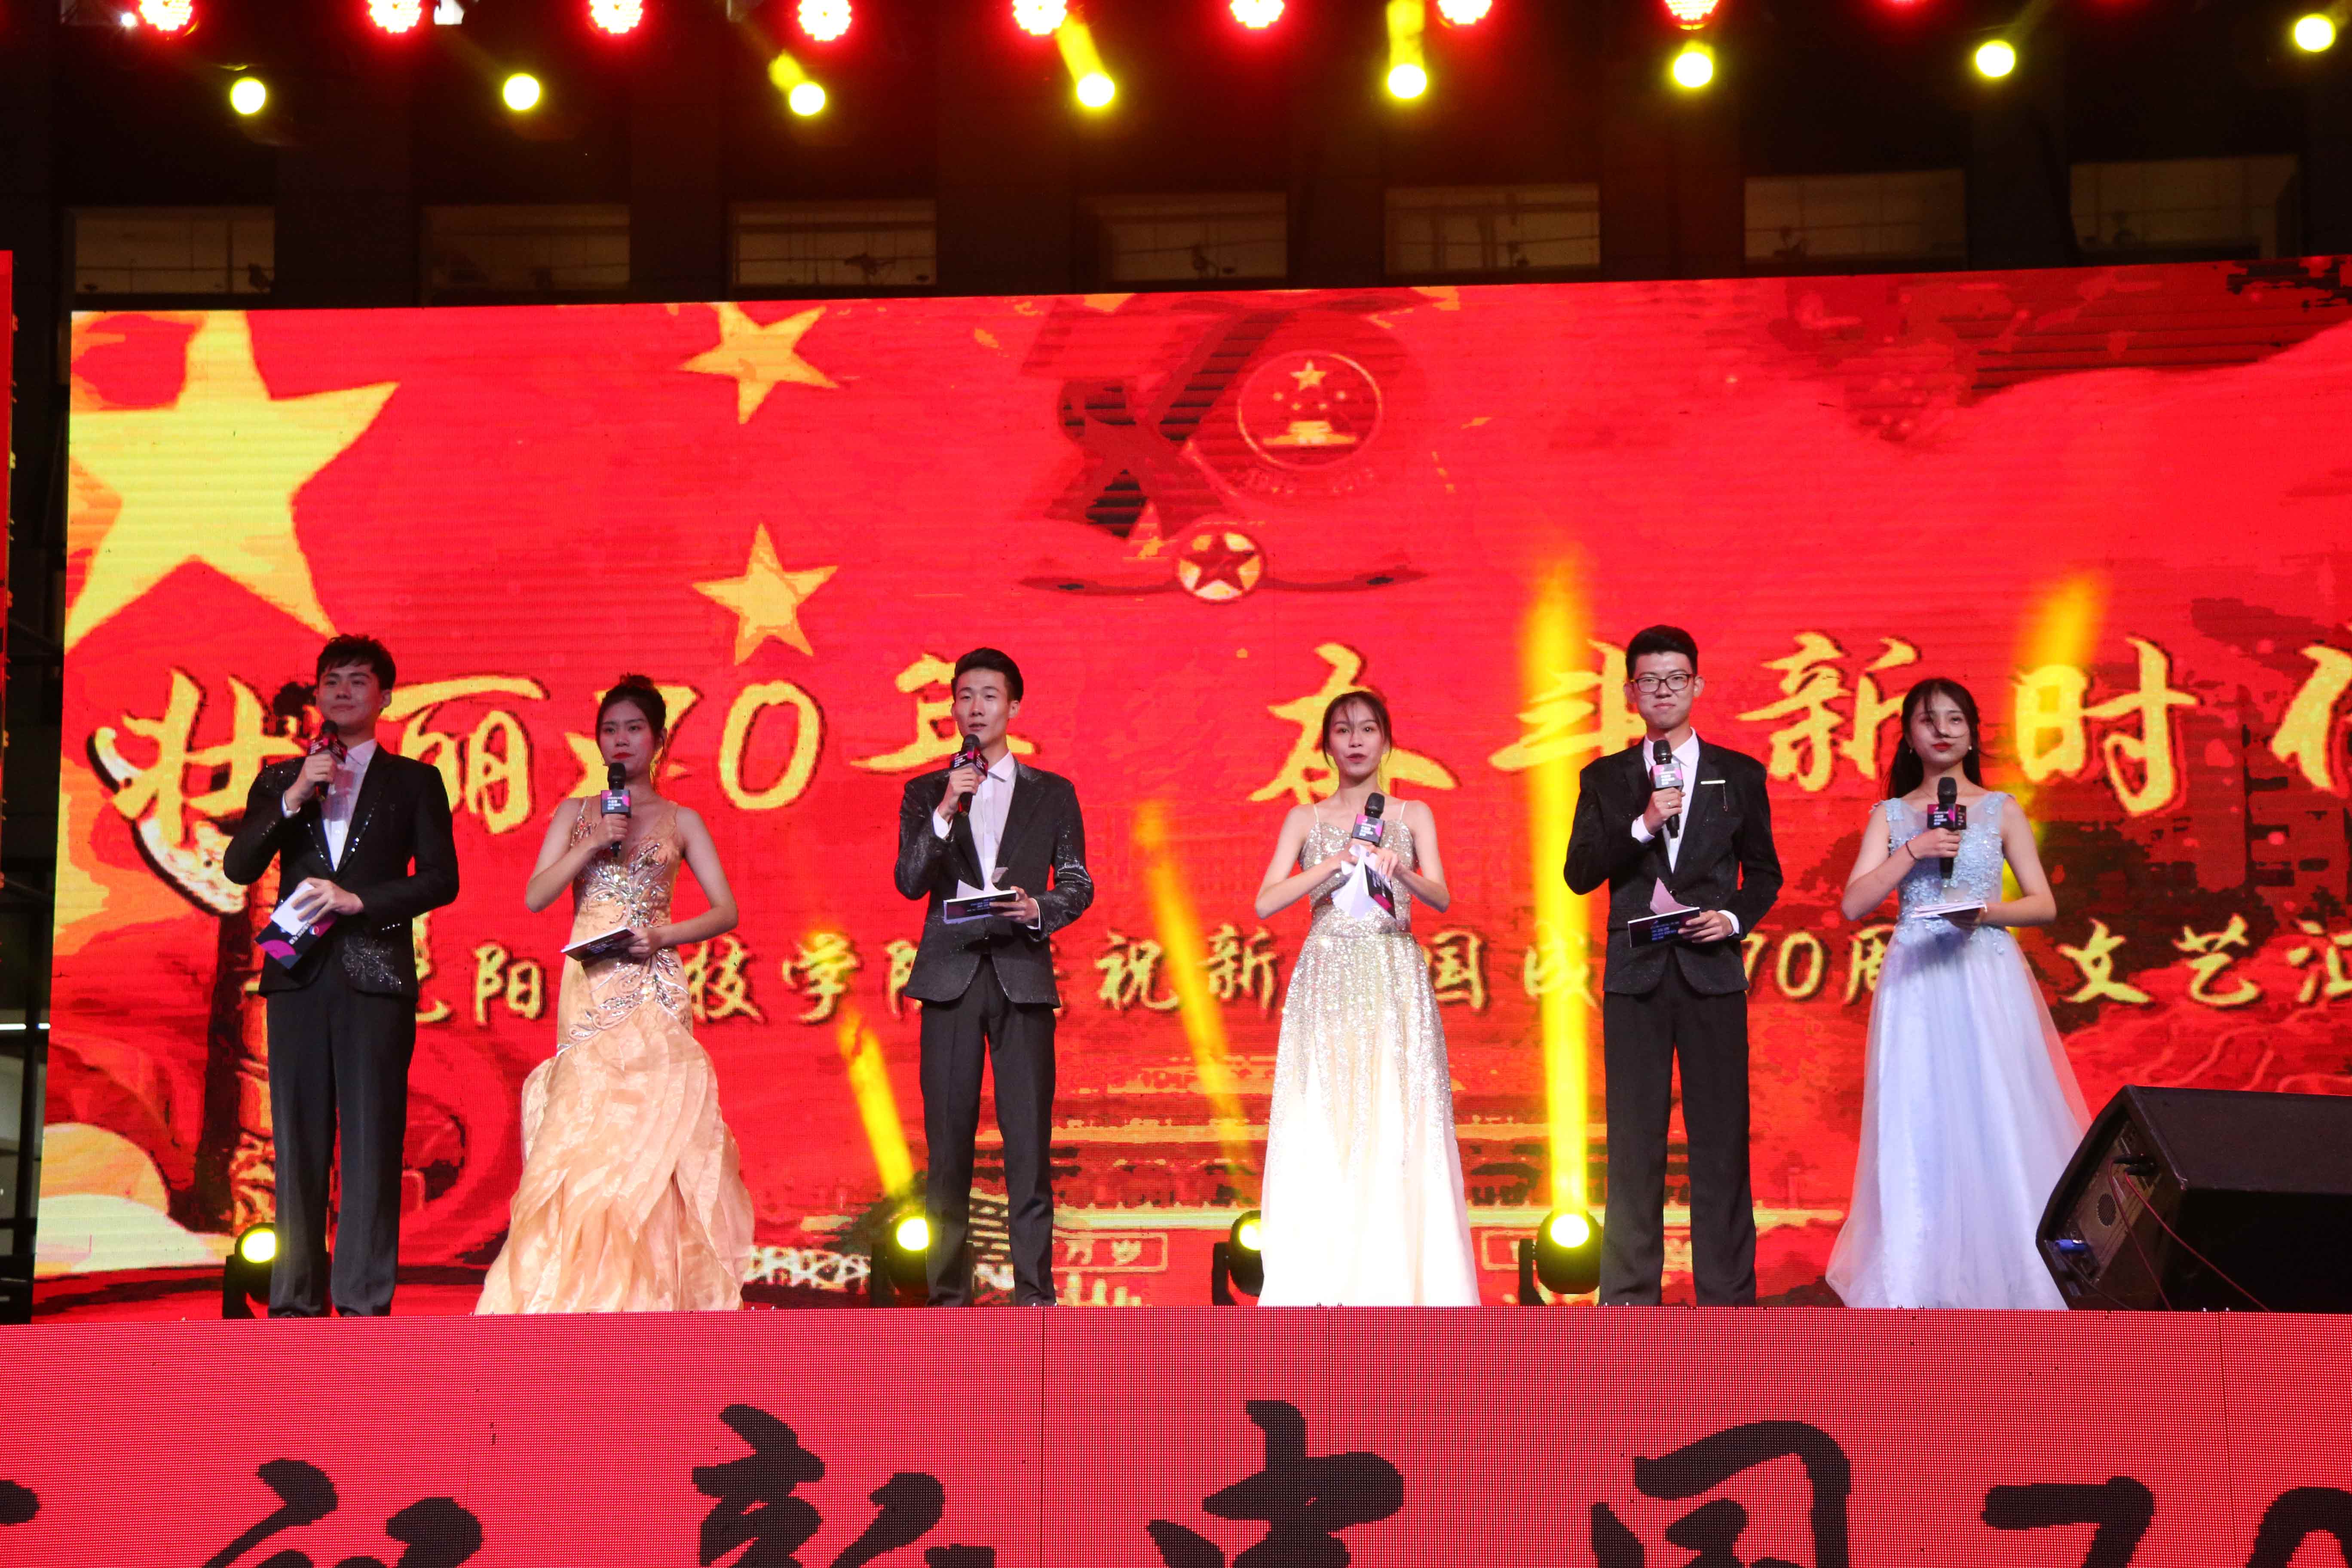 比分网(中国)官方网站成功举办庆祝新中国成立70周年文艺汇演